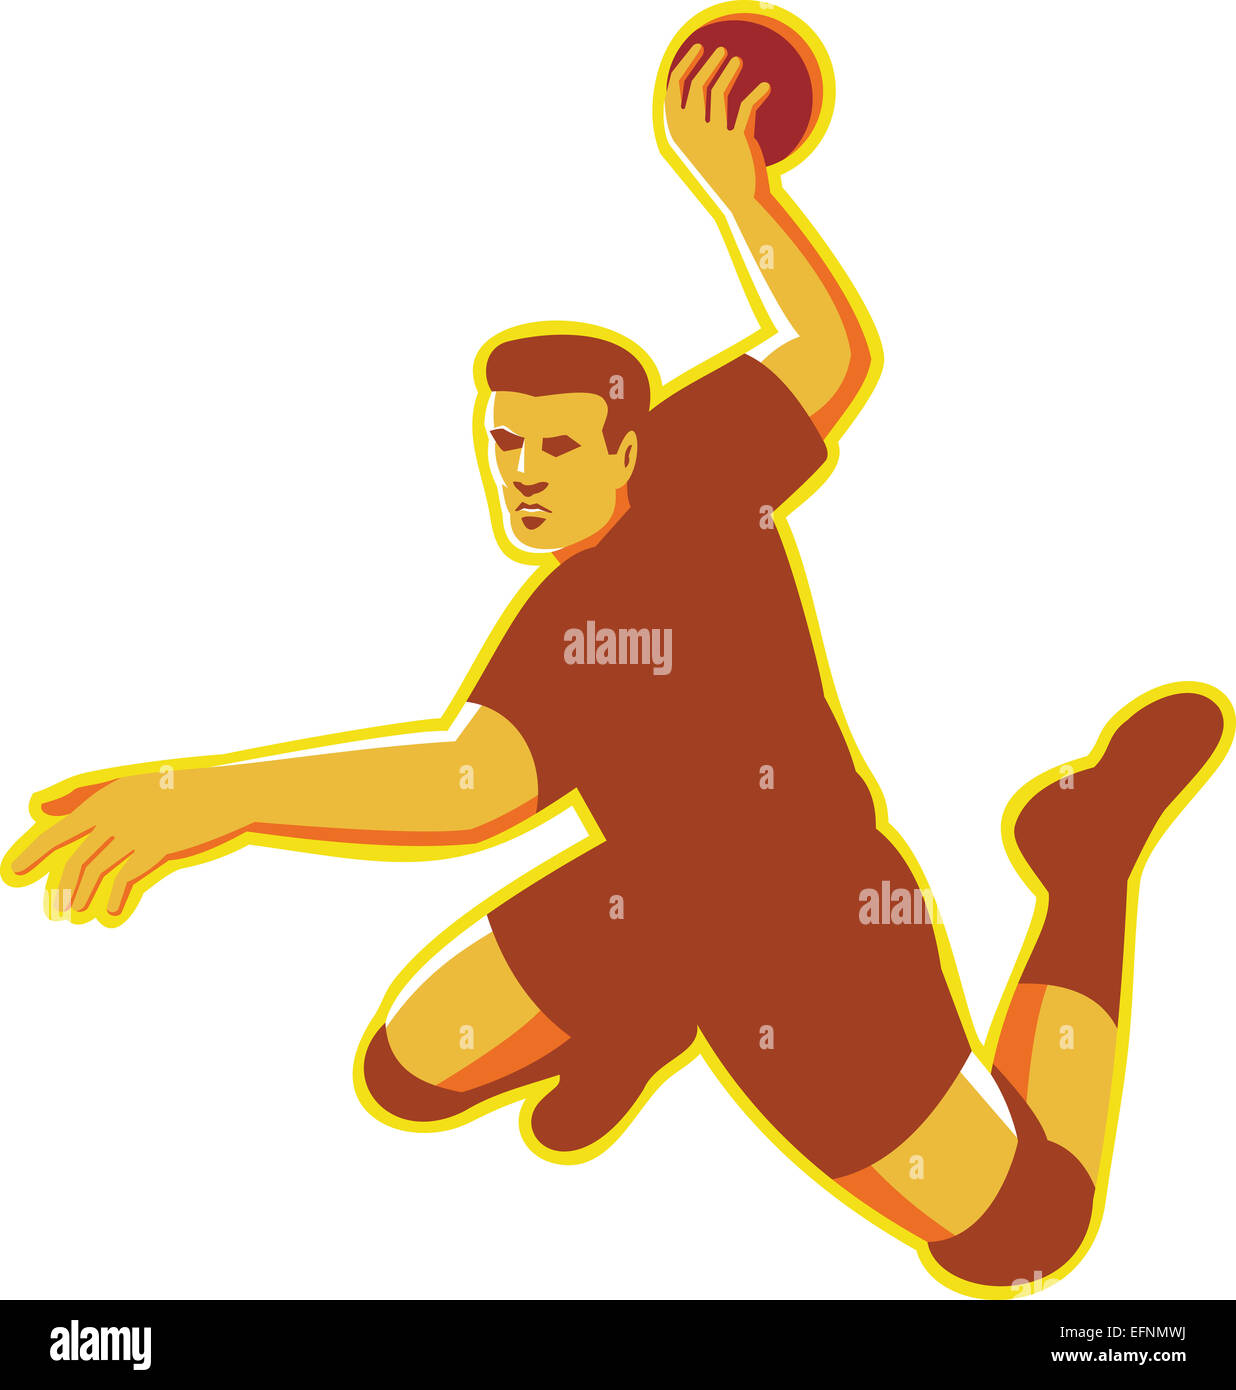 Illustrazione di una palla a mano il giocatore con la palla jumping gettando il punteggio sorprendente fatto in stile retrò isolato su sfondo bianco. Foto Stock